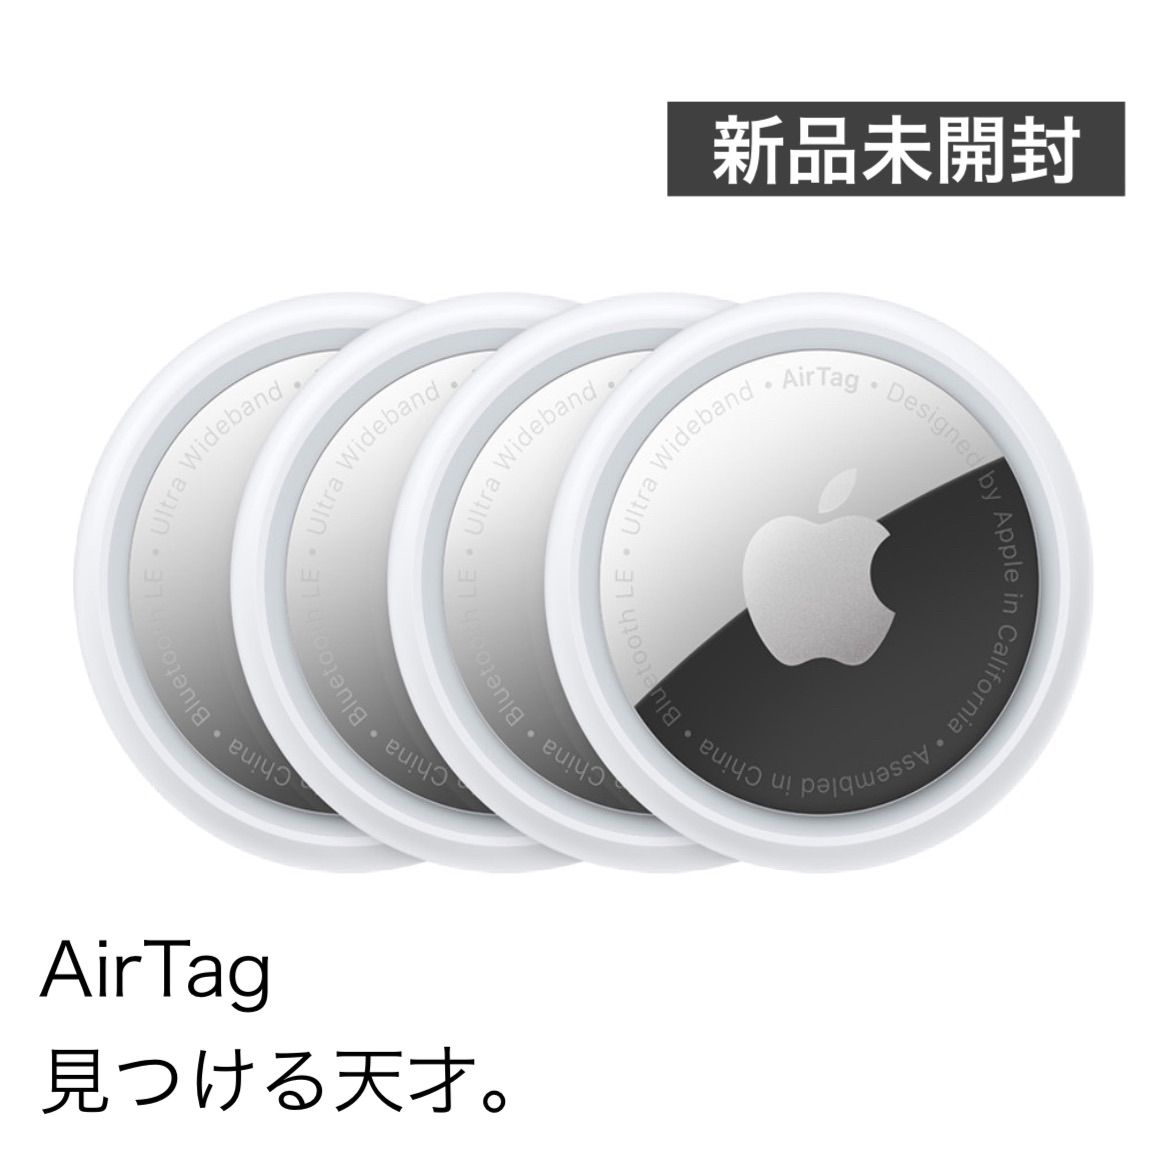 新品 エアタグApple AirTag 本体 4個入り MX542ZP A-